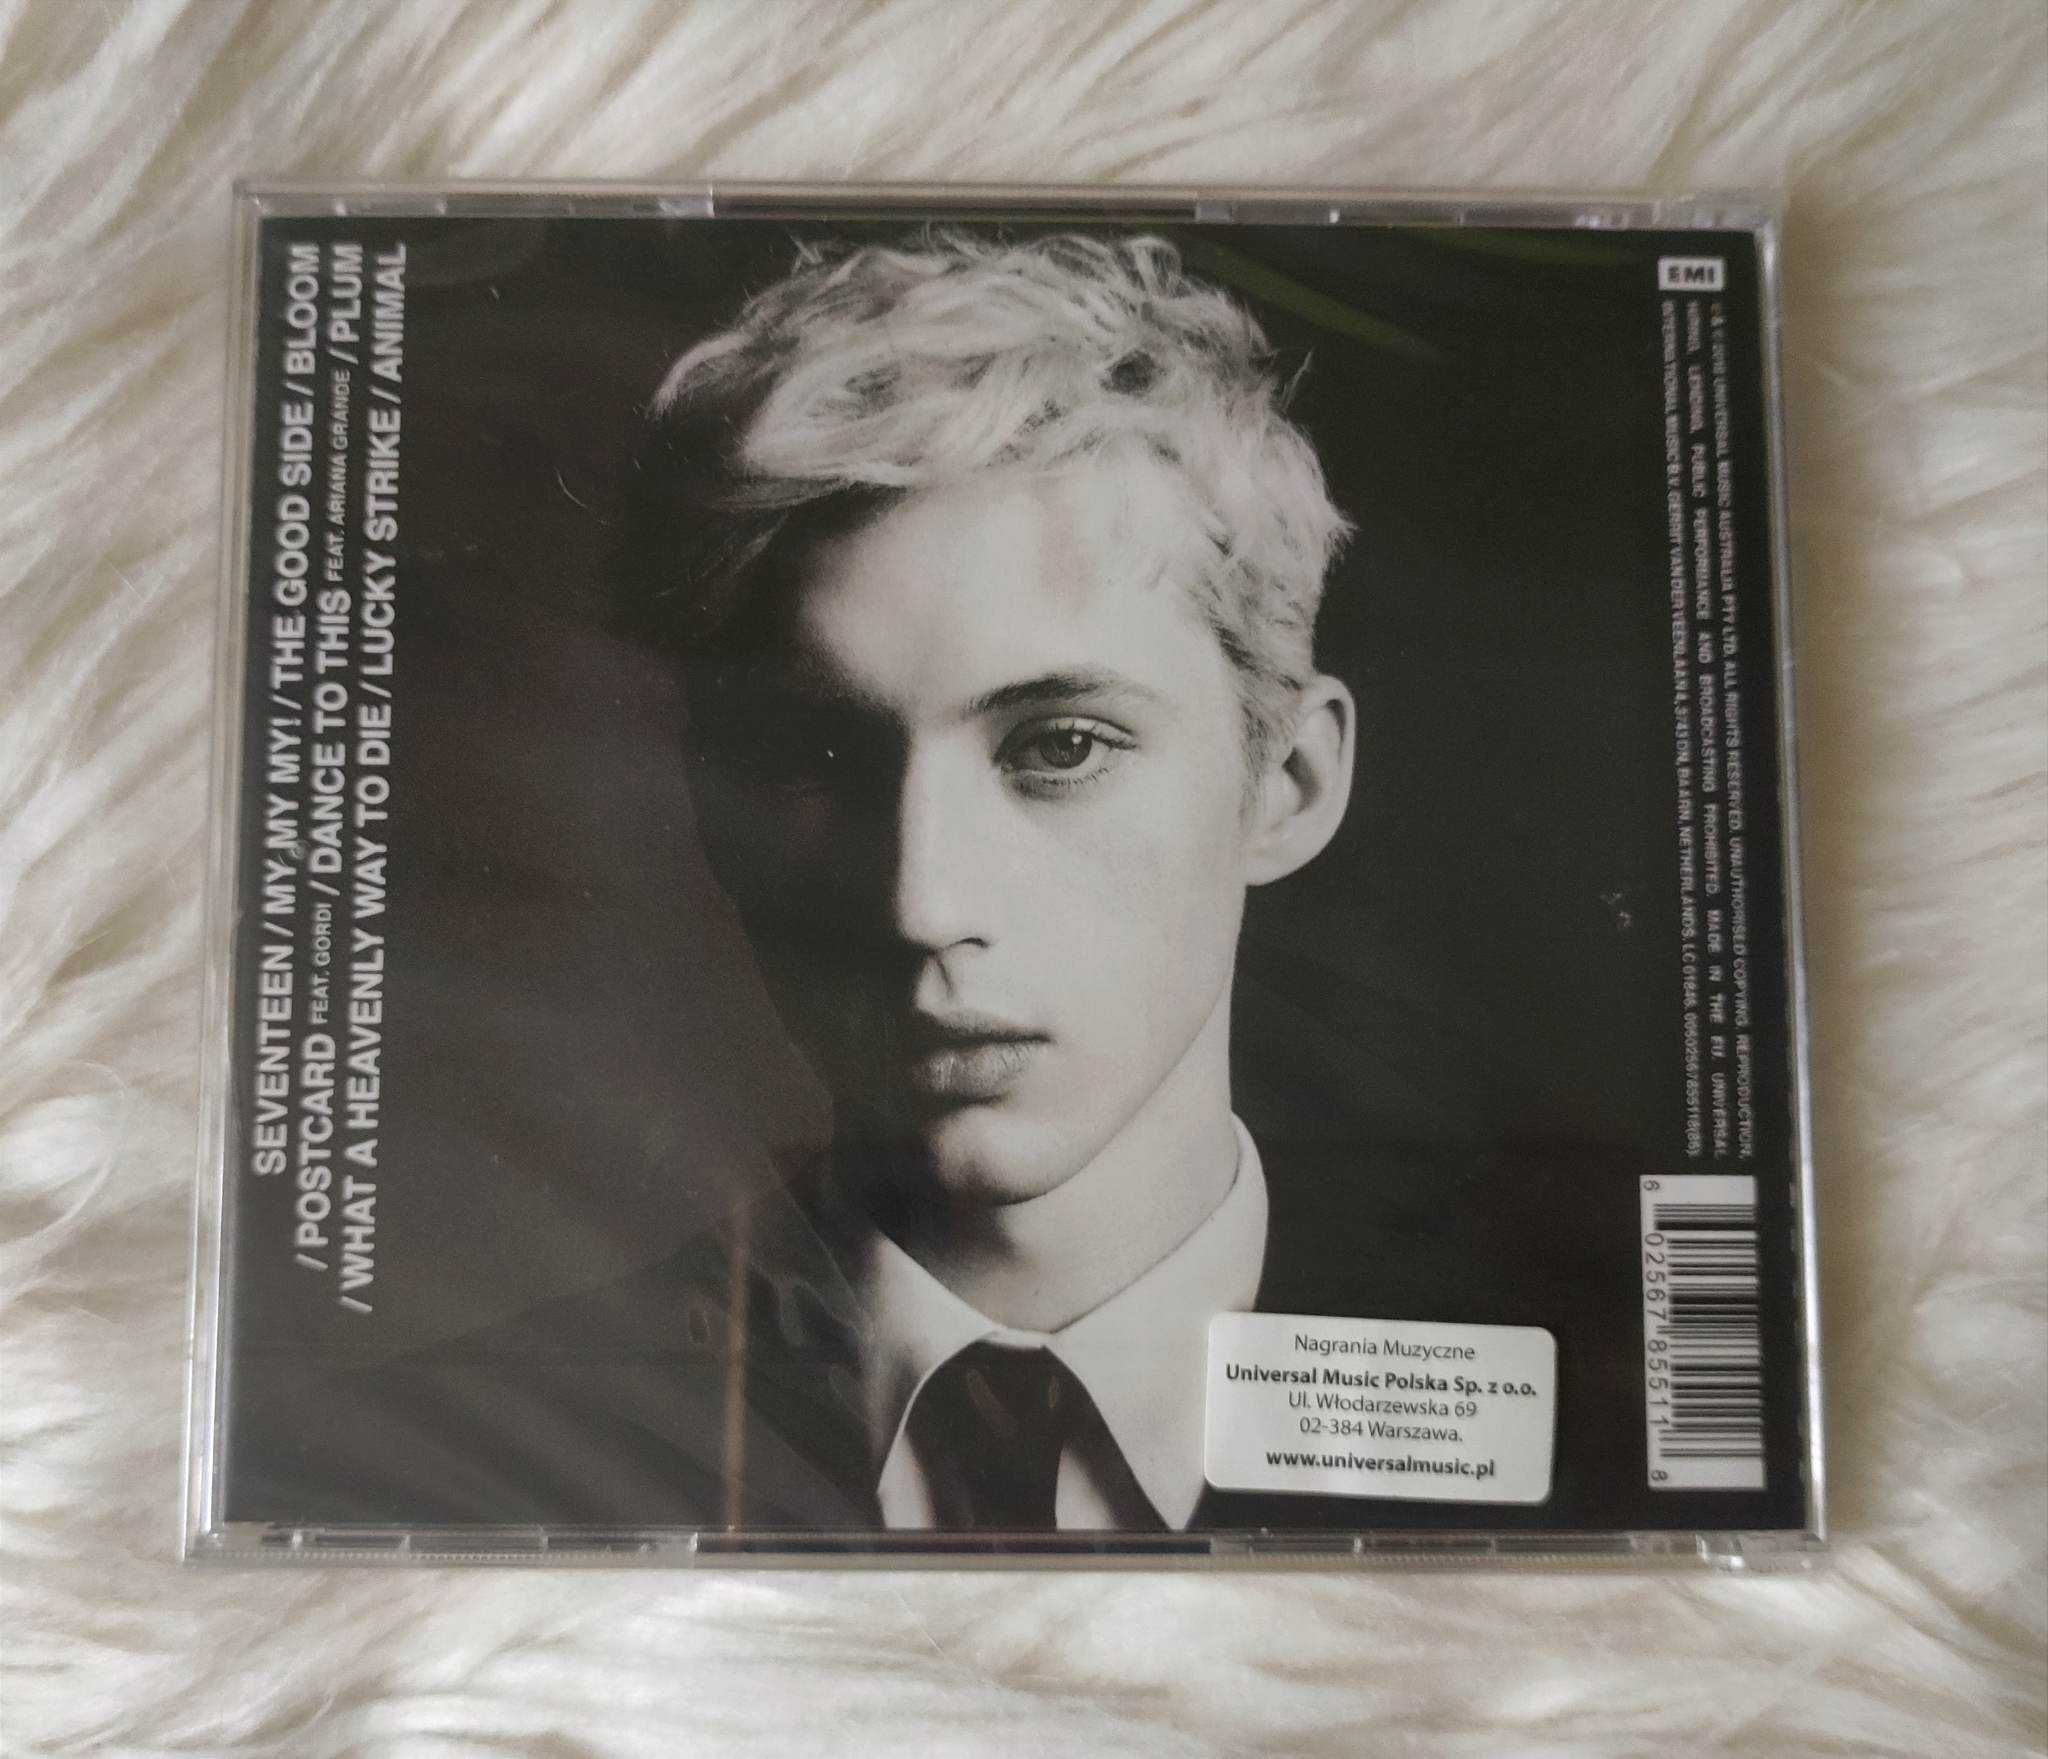 Płyta CD Troye Sivan "Bloom"